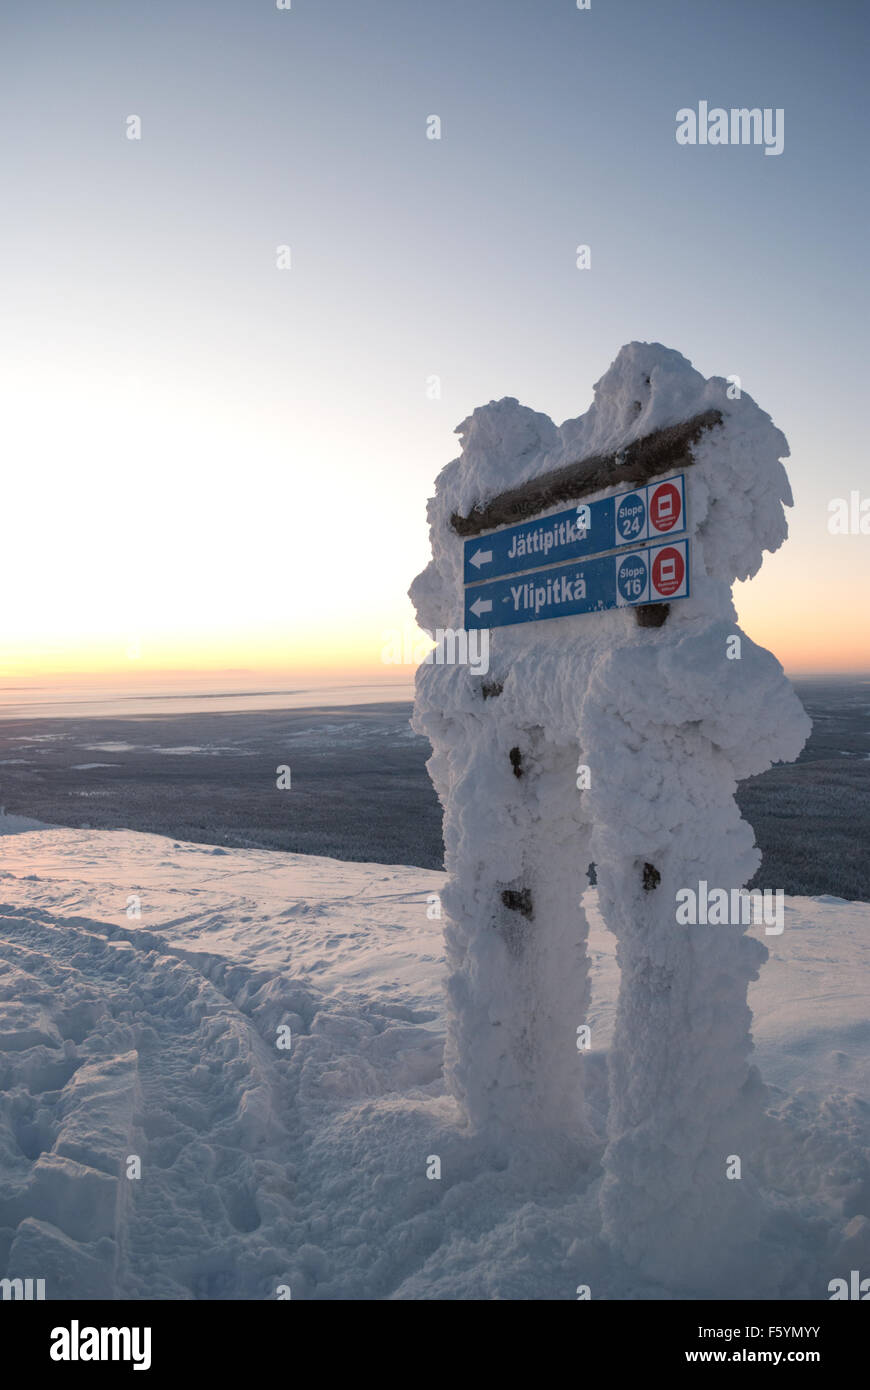 Des scènes d'hiver dans la station de ski de Yllas, la Laponie finlandaise. La neige a couvert sign post - Ylipitka Jattipitka et Banque D'Images